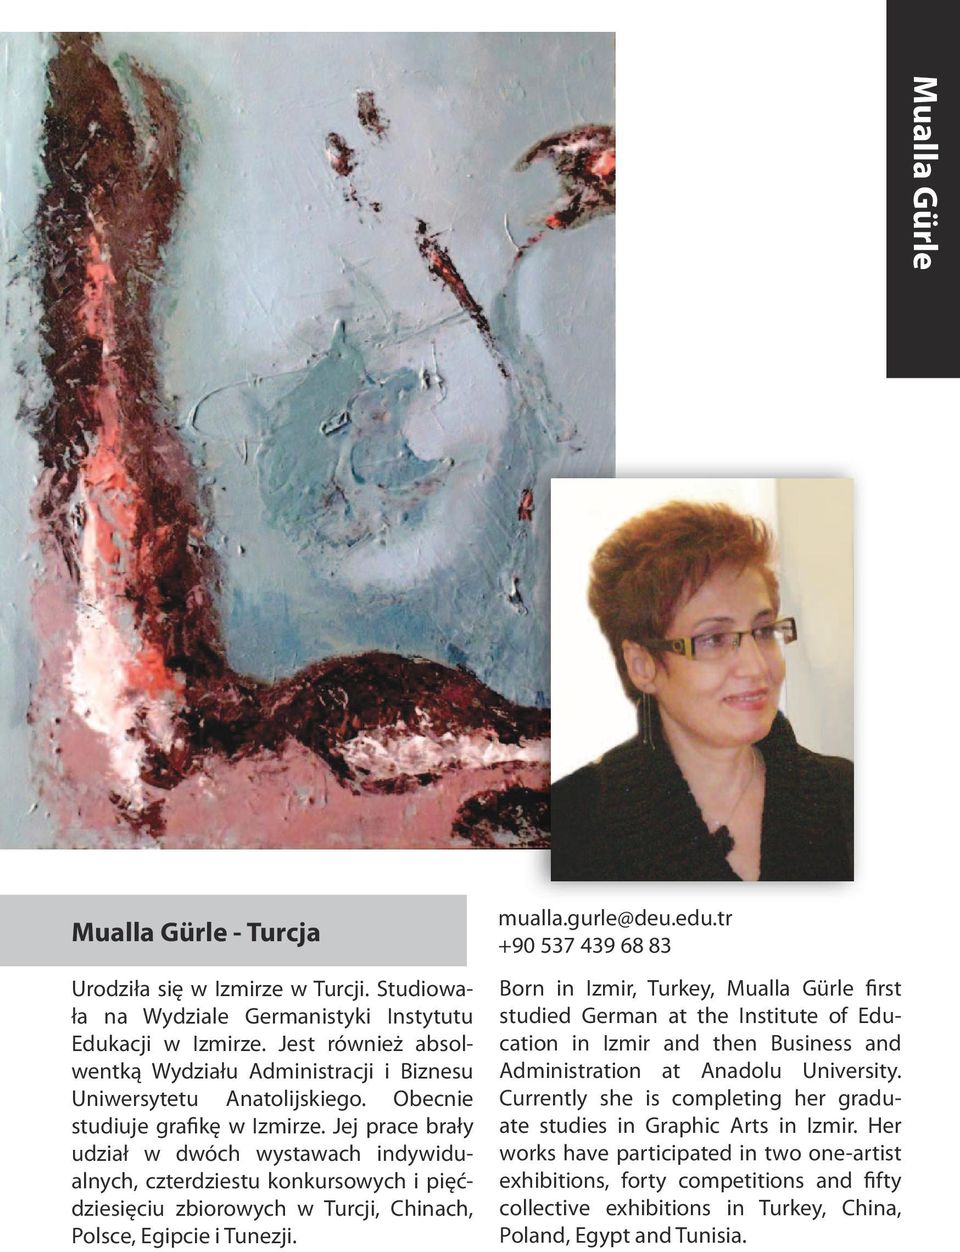 Jej prace brały udział w dwóch wystawach indywidualnych, czterdziestu konkursowych i pięćdziesięciu zbiorowych w Turcji, Chinach, Polsce, Egipcie i Tunezji. mualla.gurle@deu.edu.